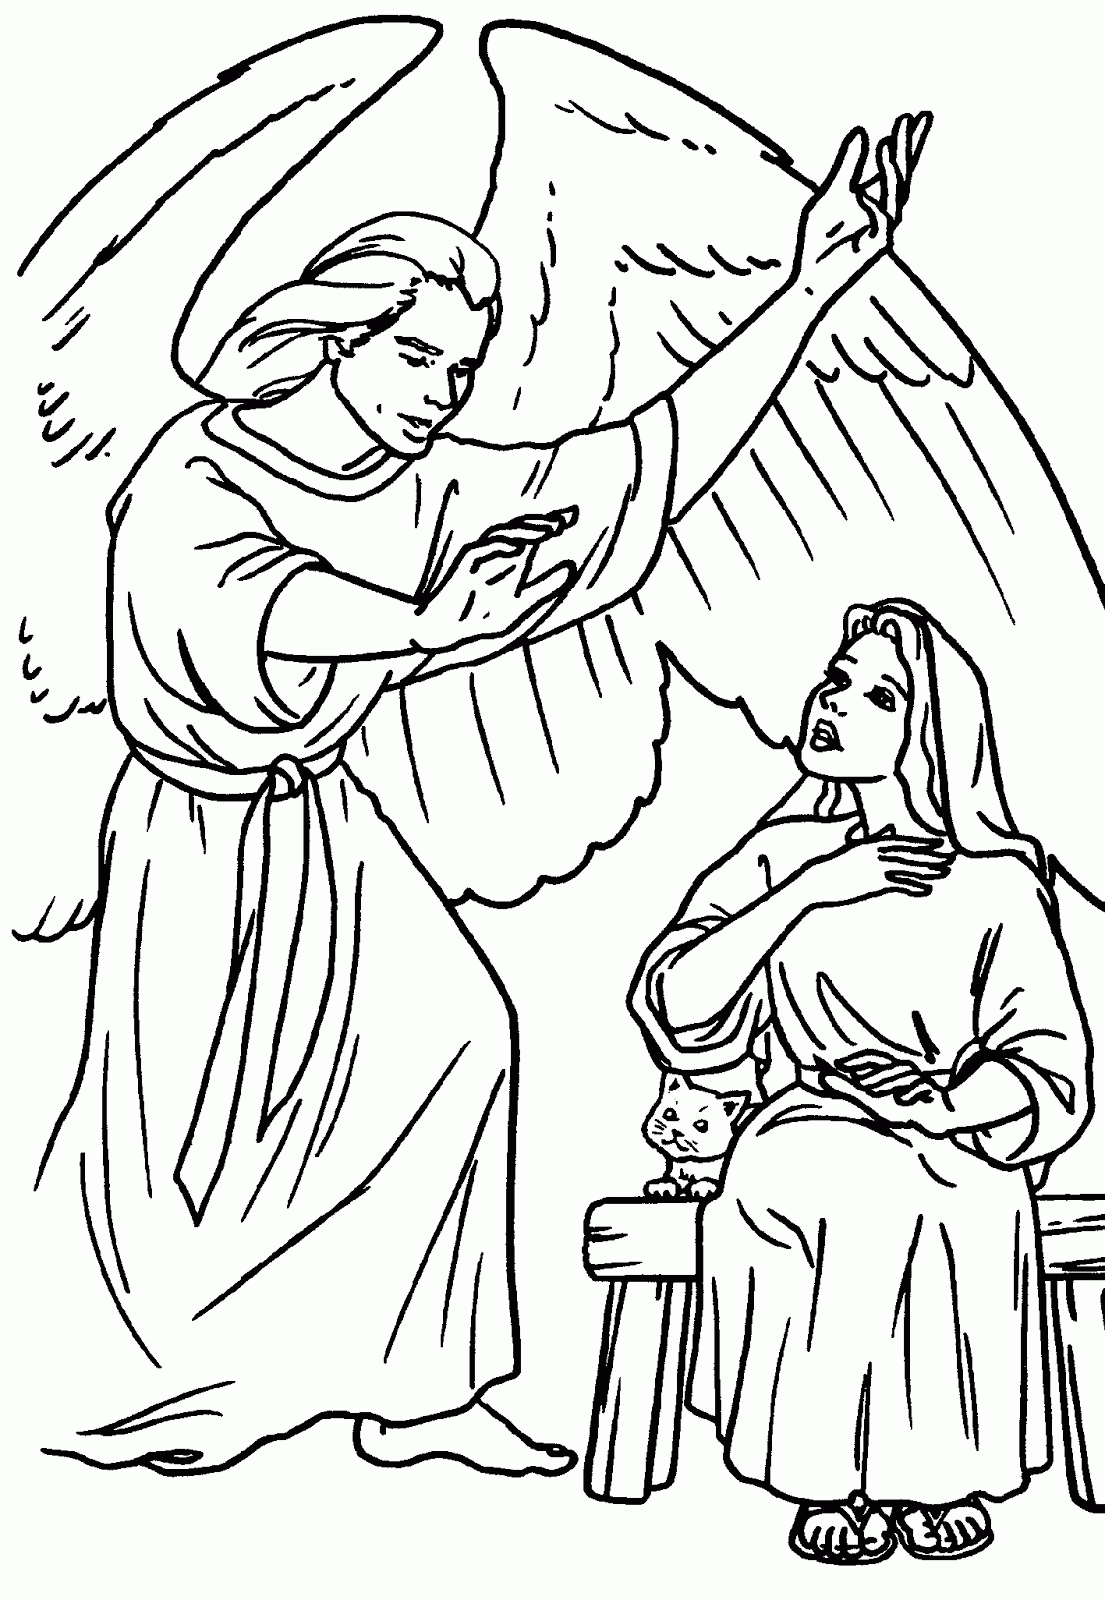 COLOREA TUS DIBUJOS: Dibujo de Maria y el angel Gabriel para dibujar